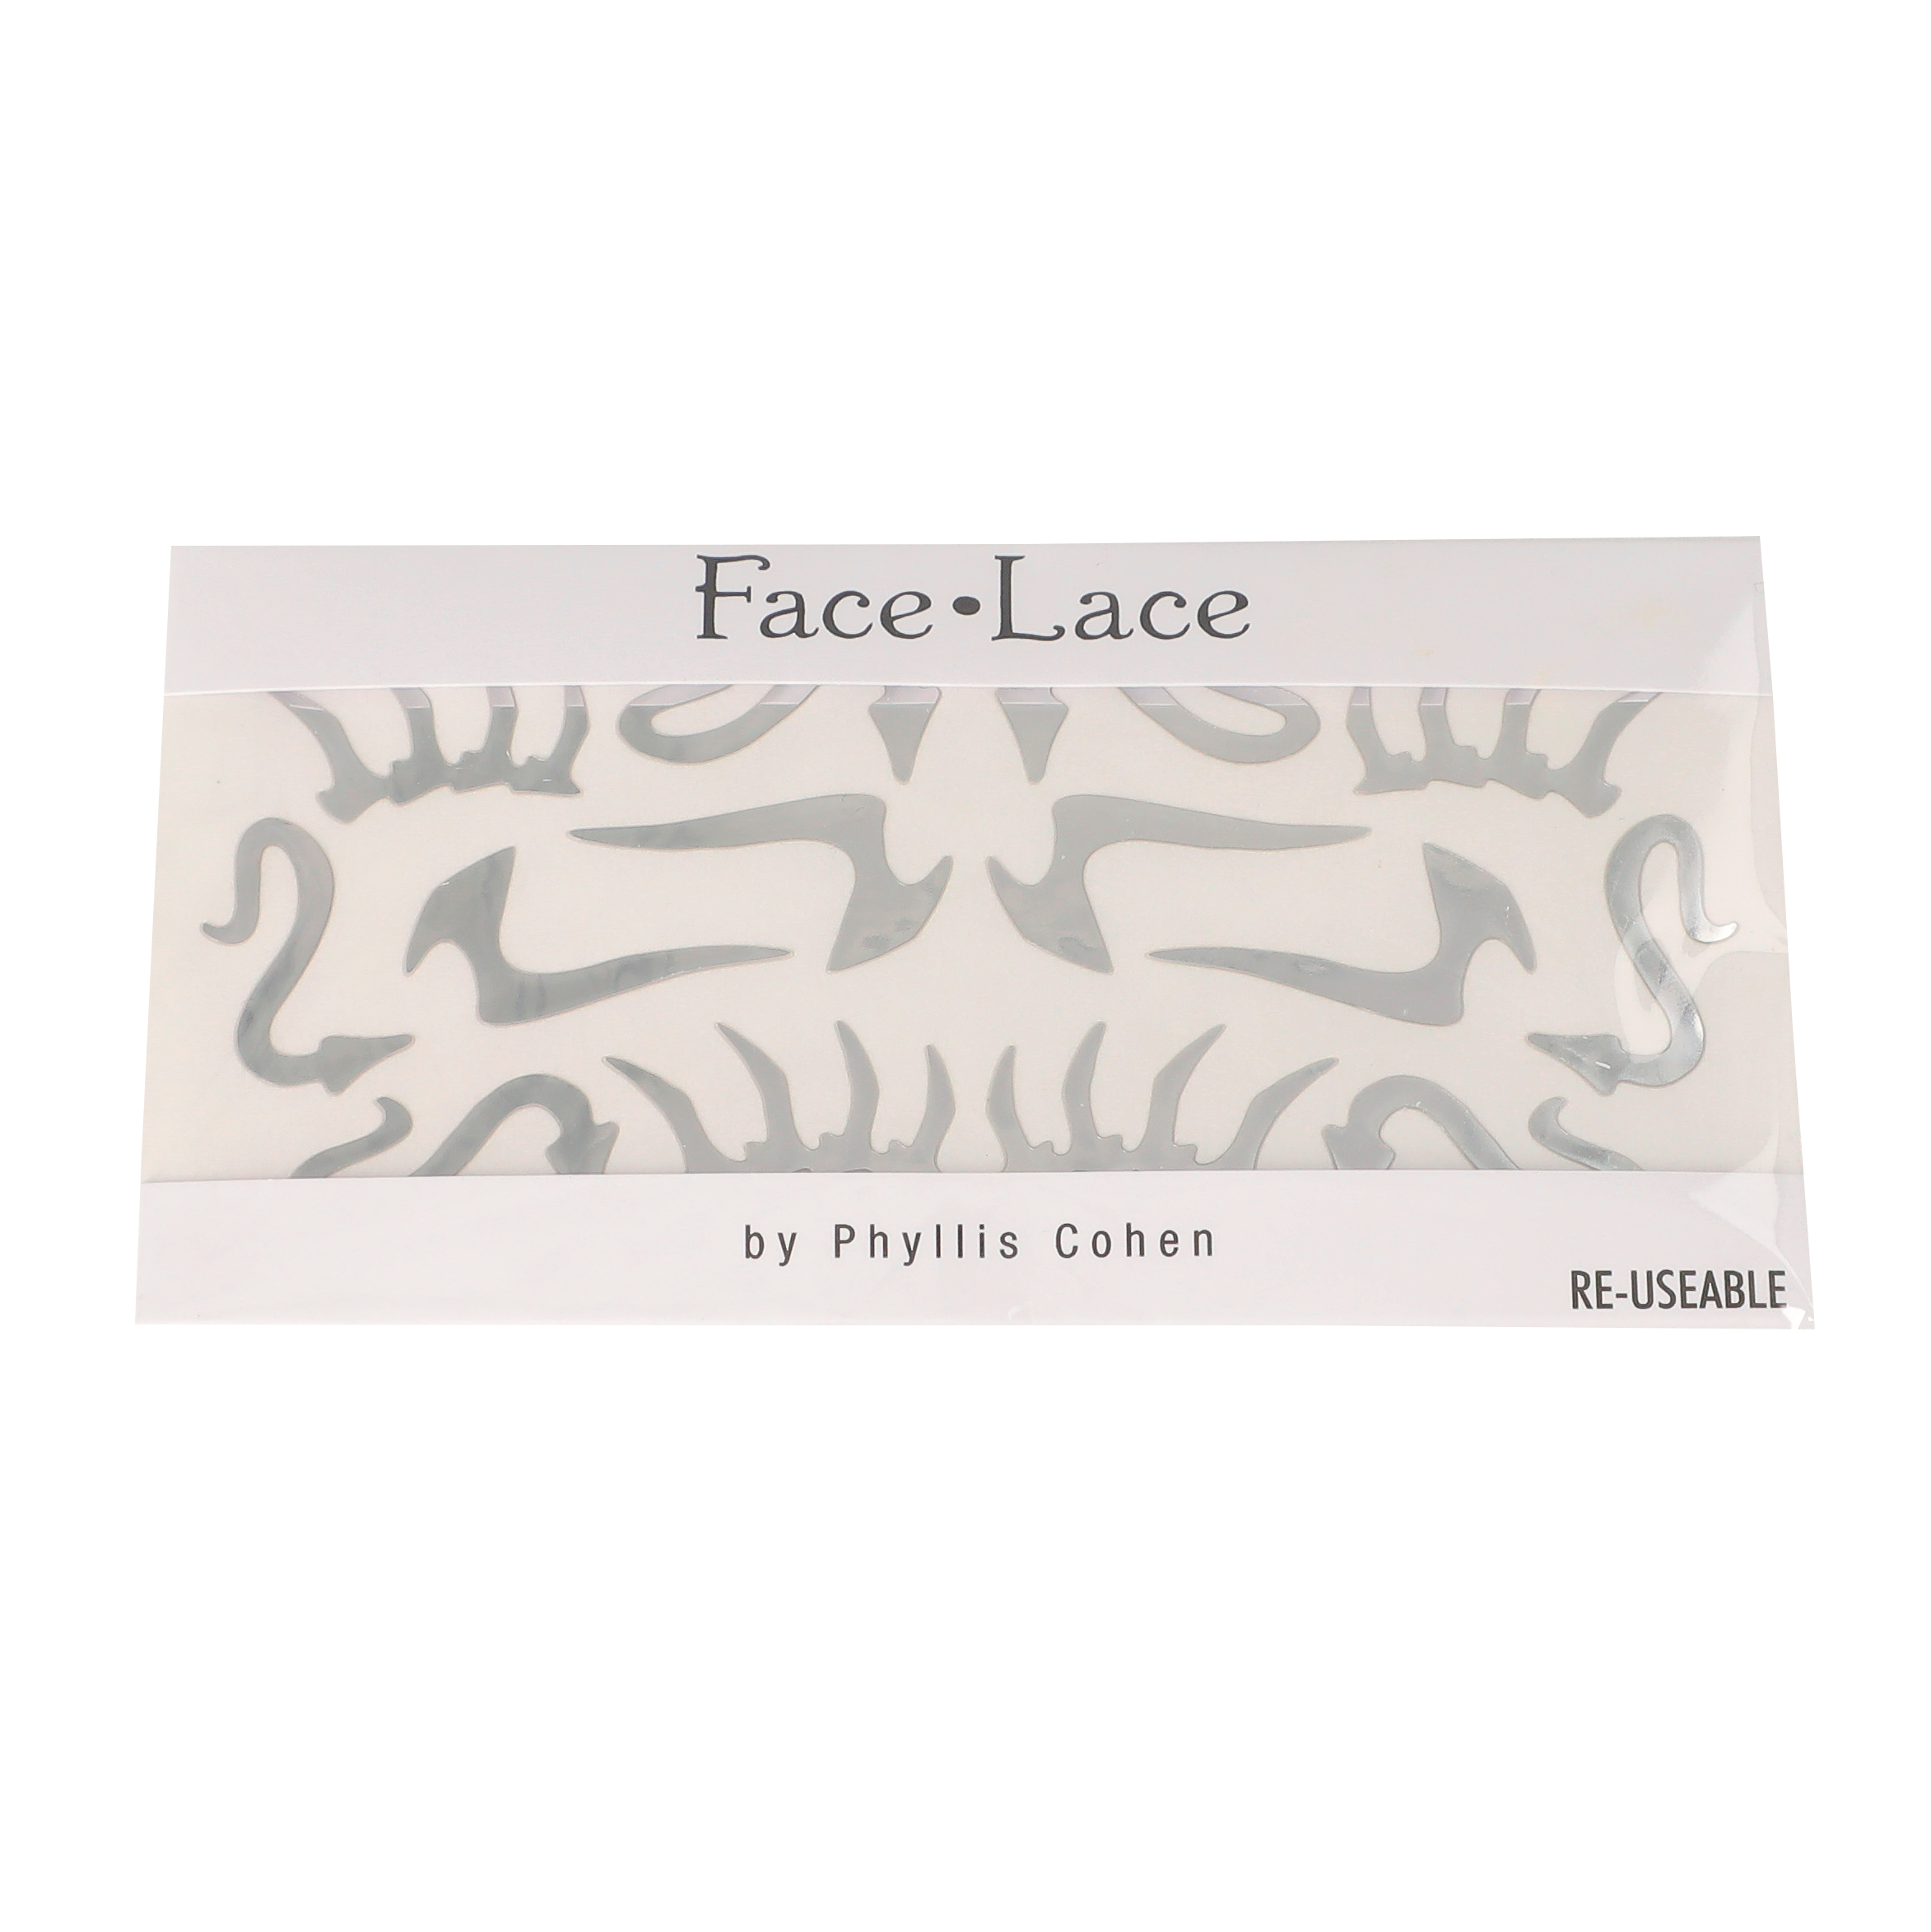 Reptalien / Face Lace by Phyllis Cohen